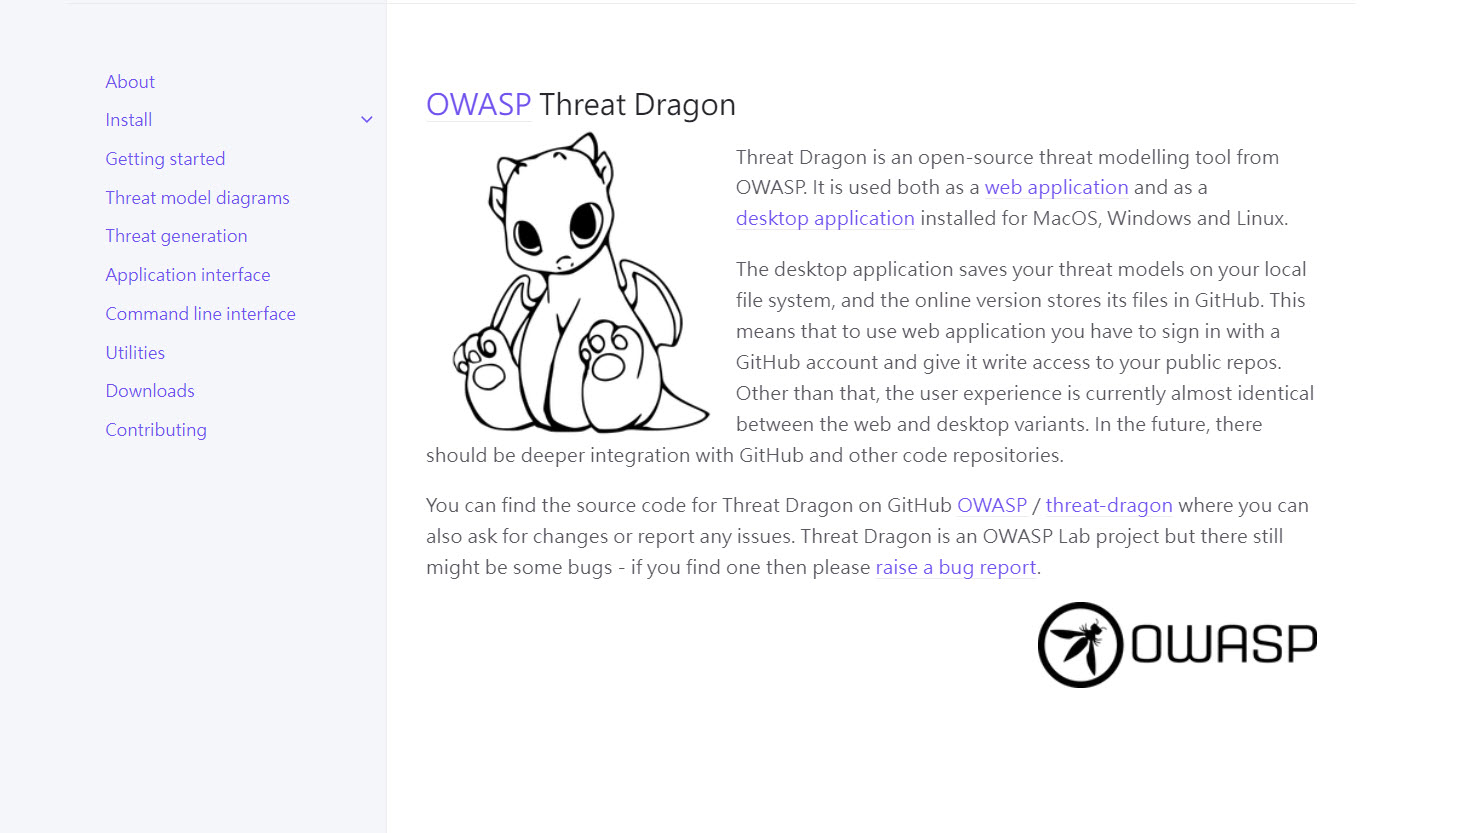 OWASP Threat Dragon